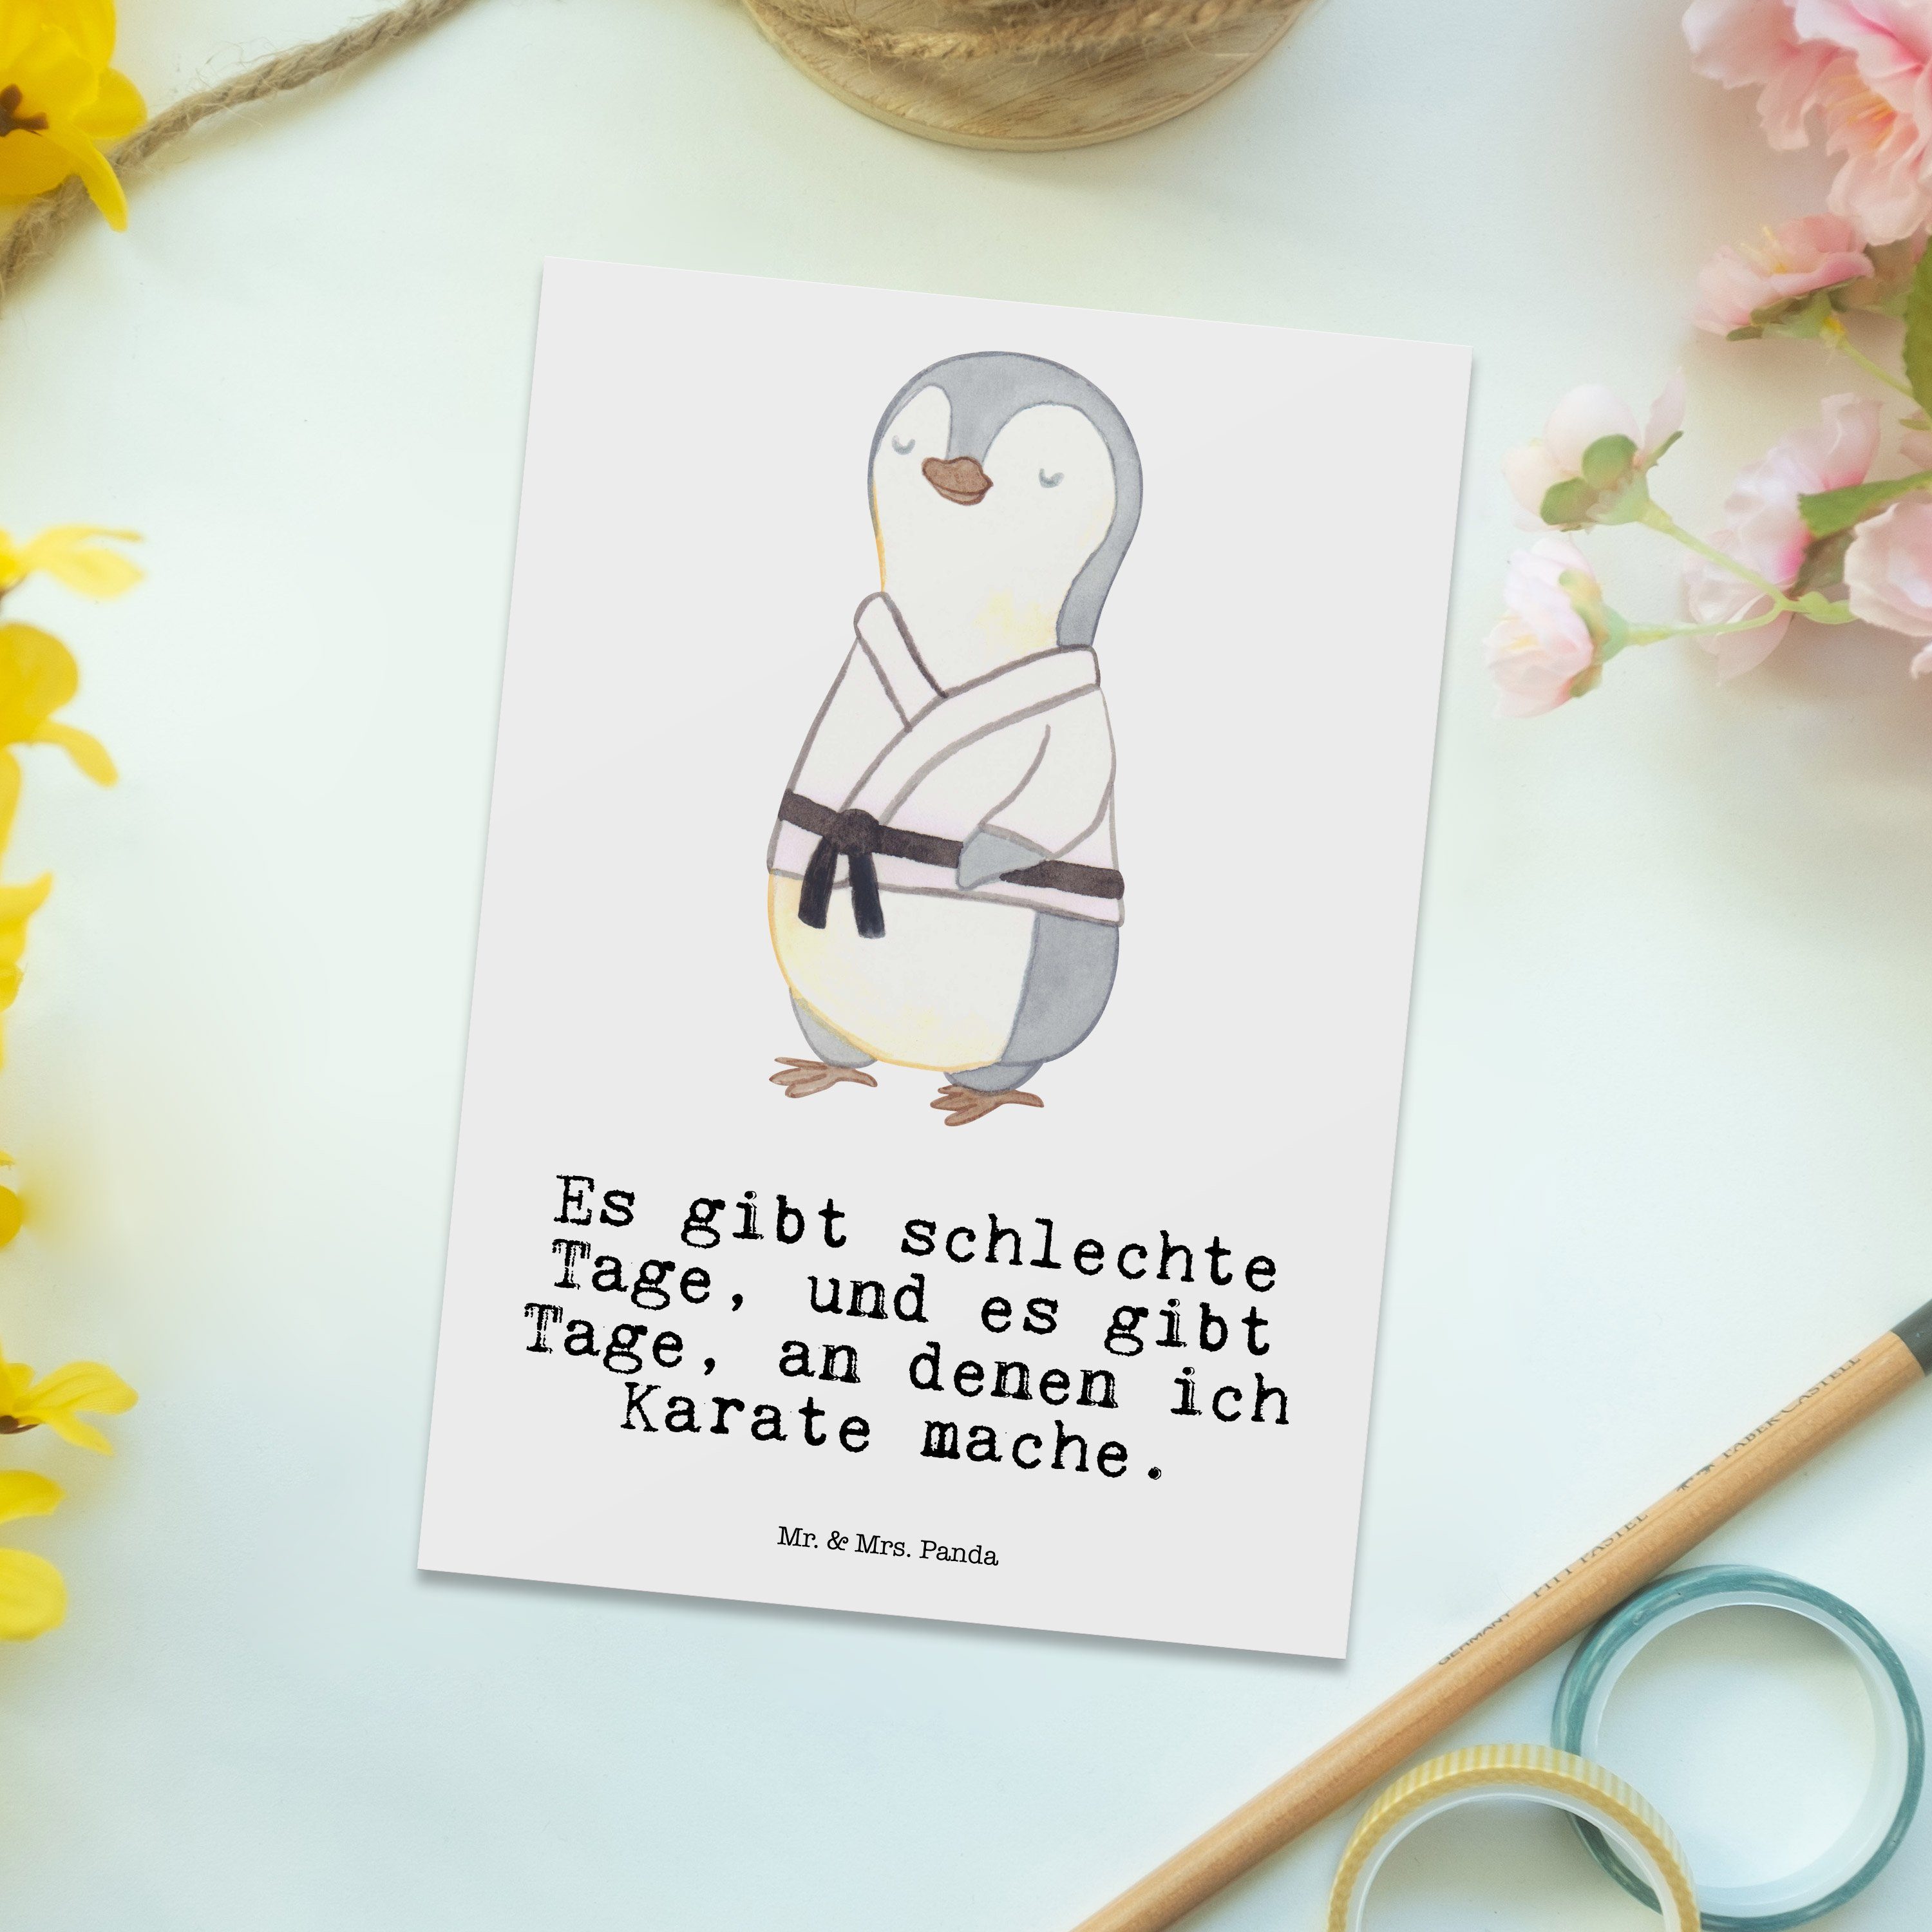 Mr. & Mrs. Panda Postkarte Einladung Pinguin - Geschenk, Selbstverteidigung, - Tage Karate Weiß